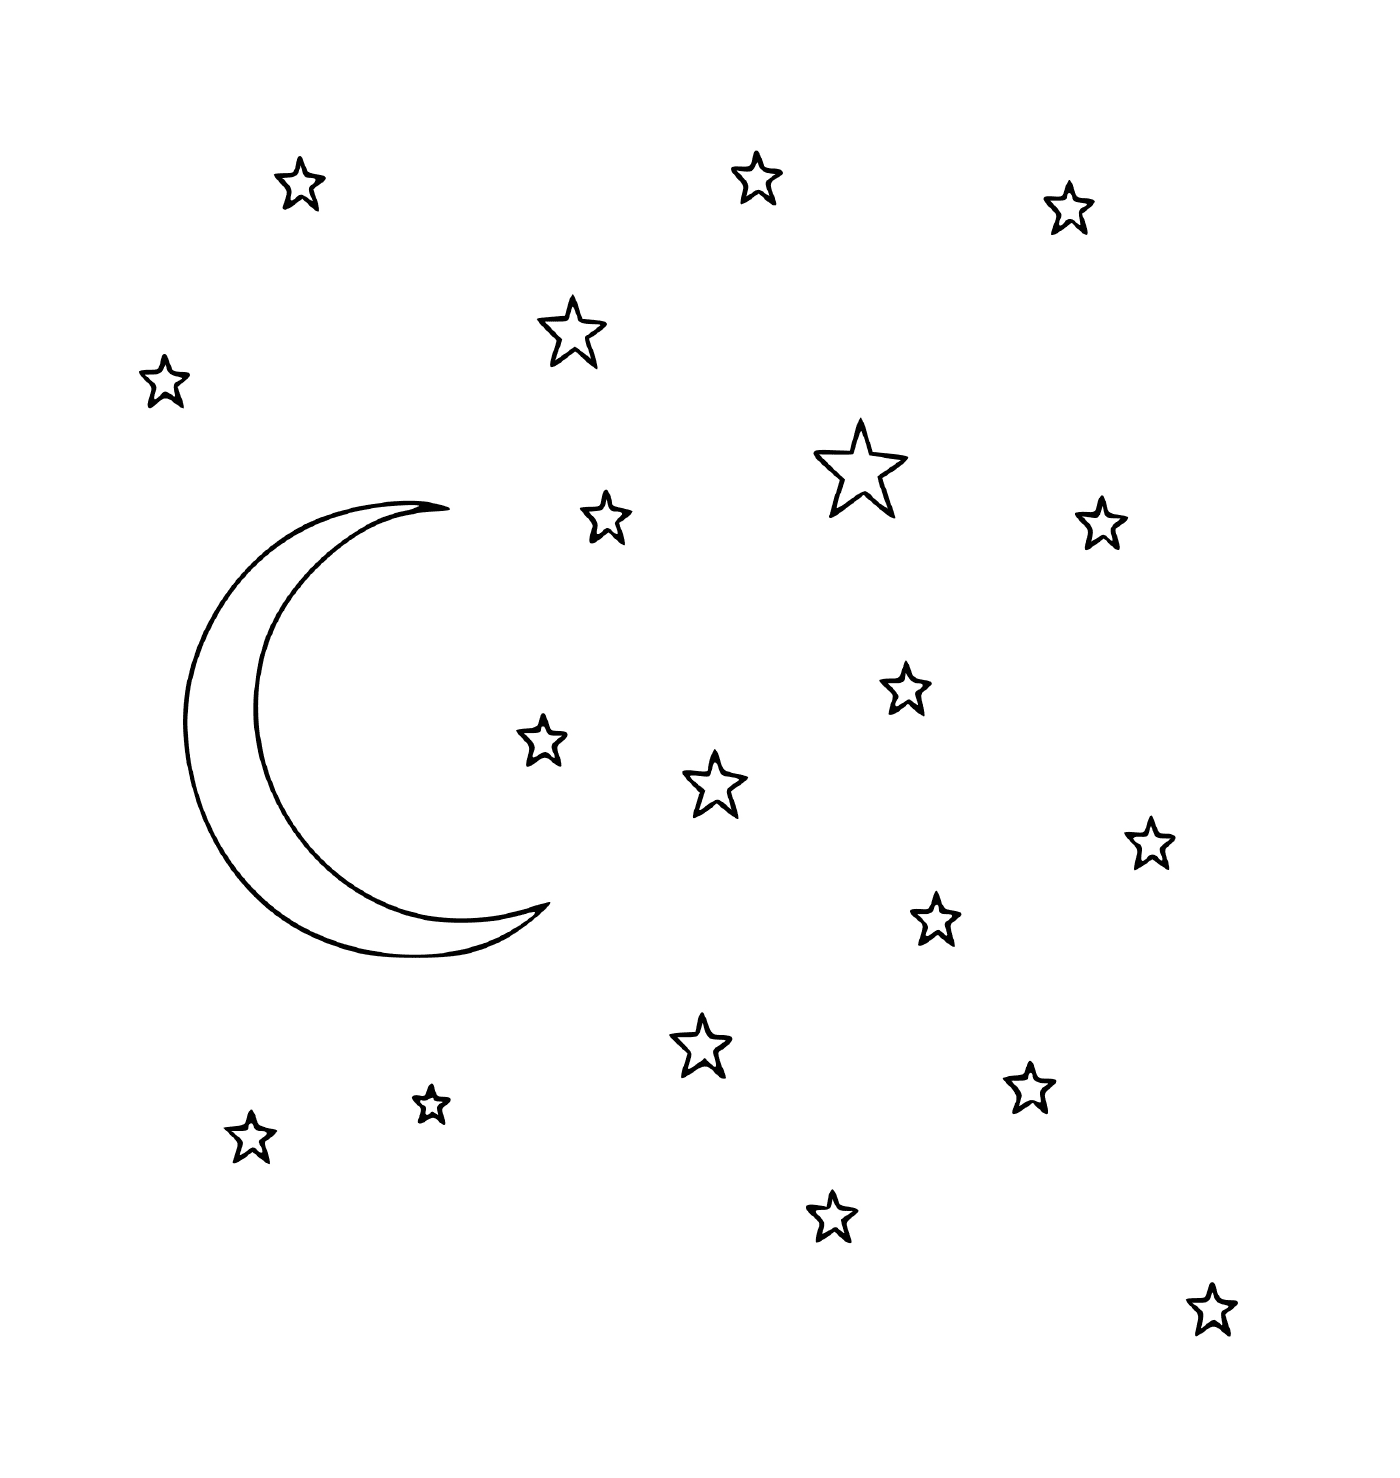  明亮的月亮和星星 